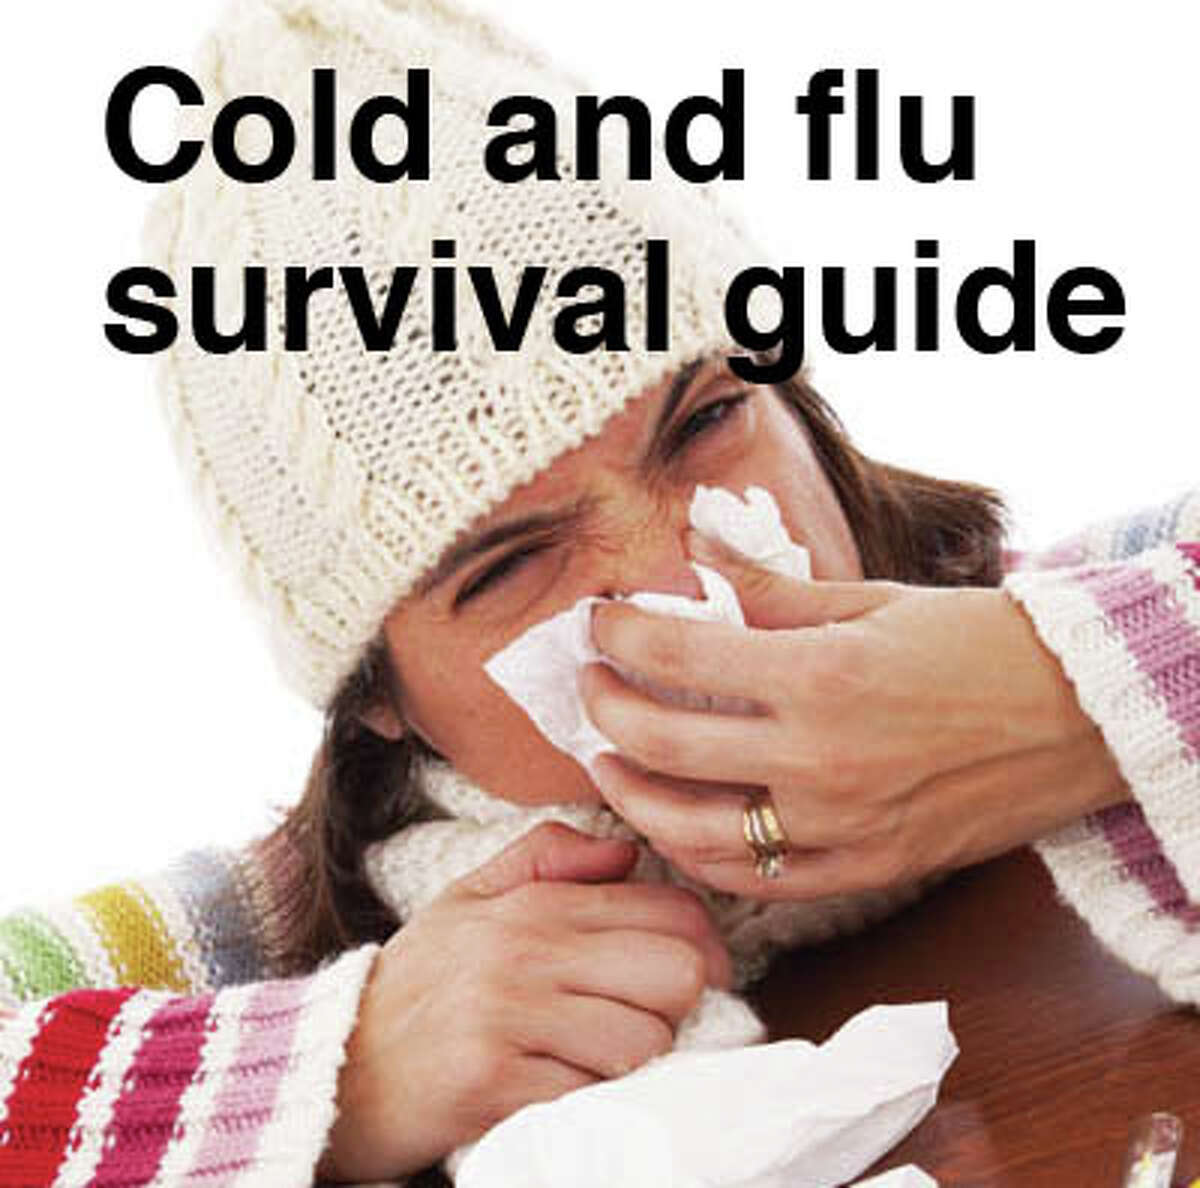 flu sick quotes